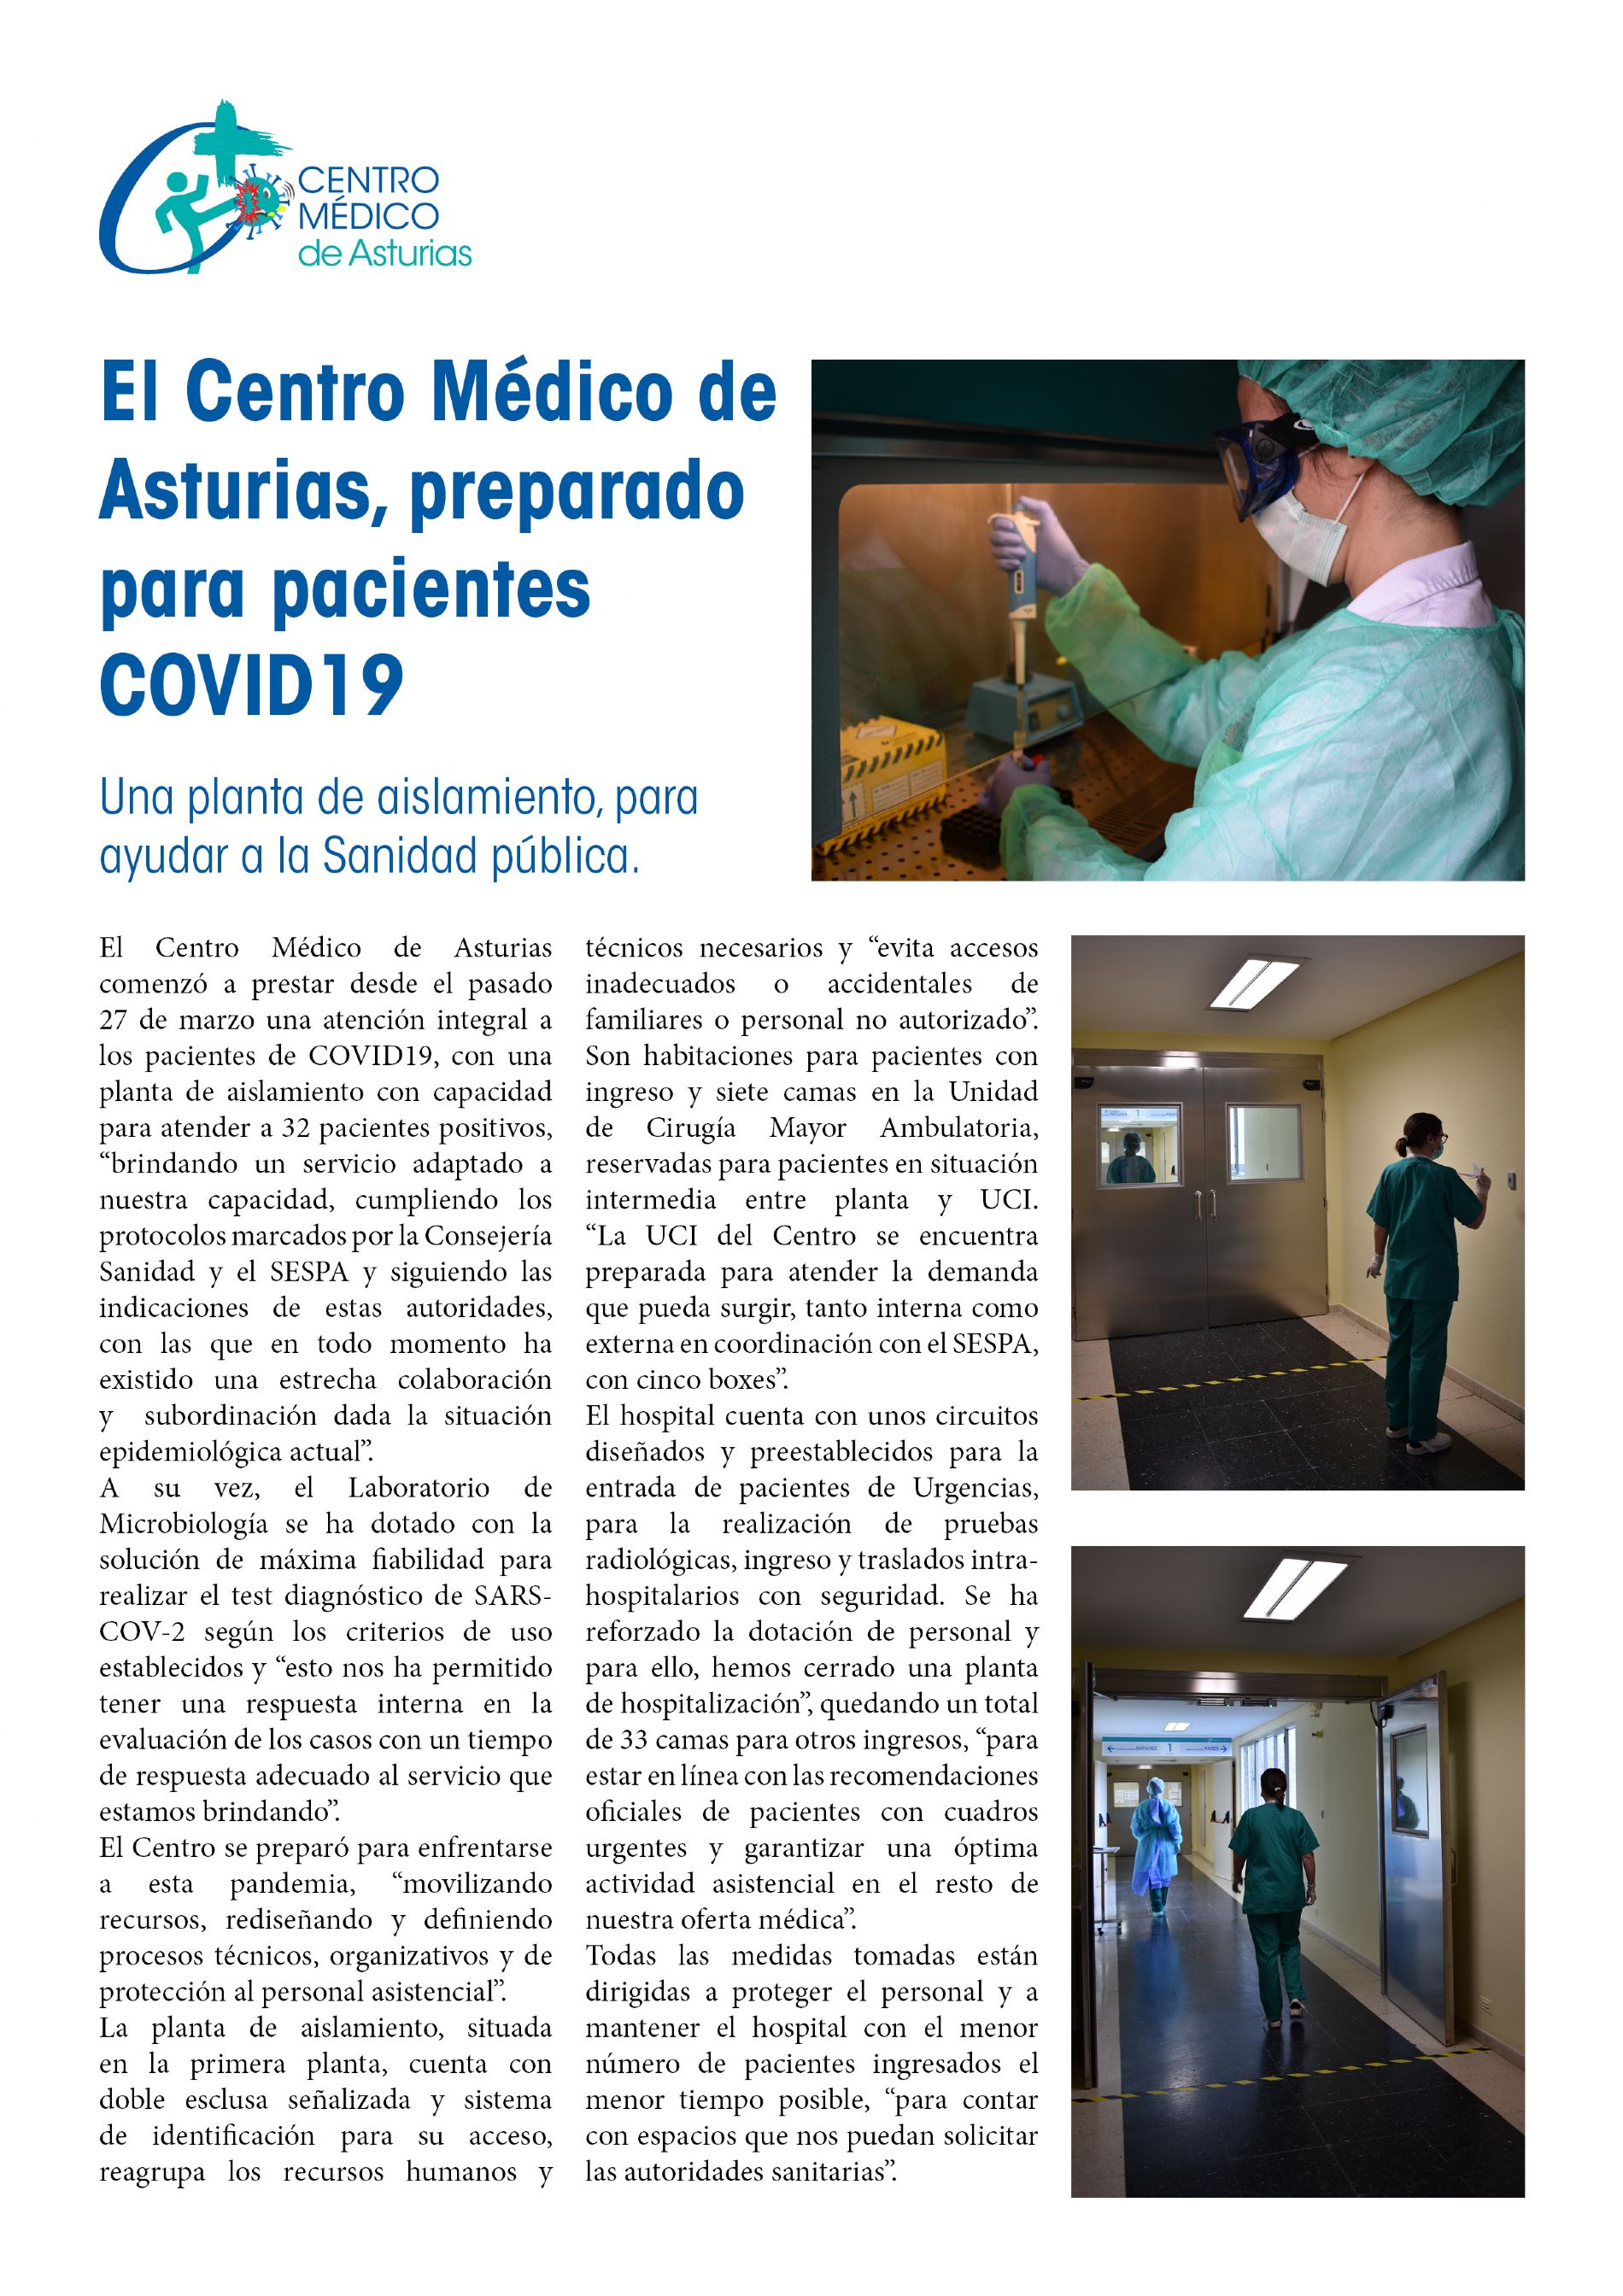 El Centro Médico de Asturias, preparado para pacientes COVID19